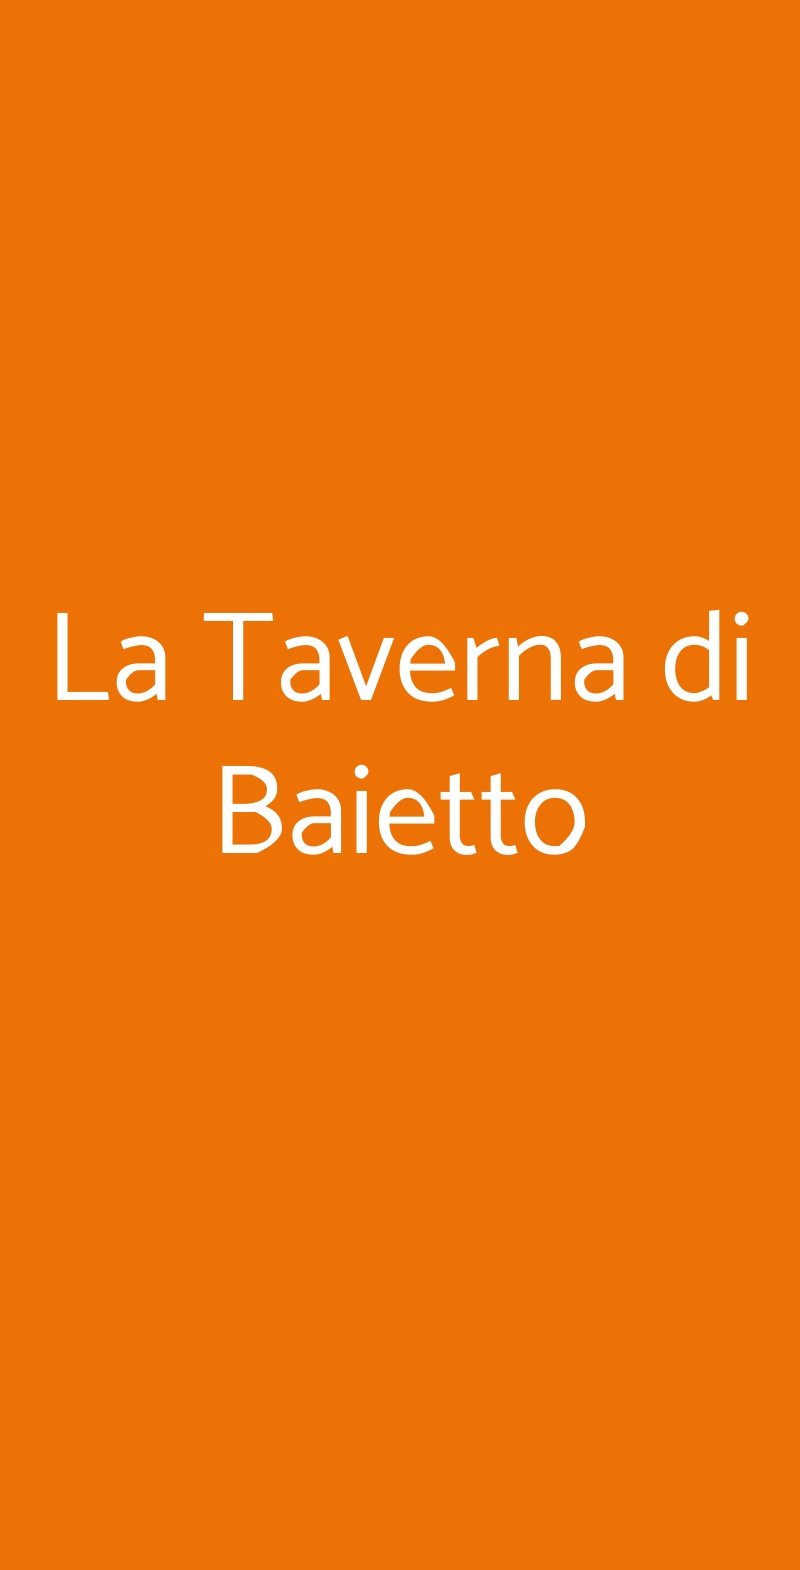 La Taverna di Baietto Montalcino menù 1 pagina